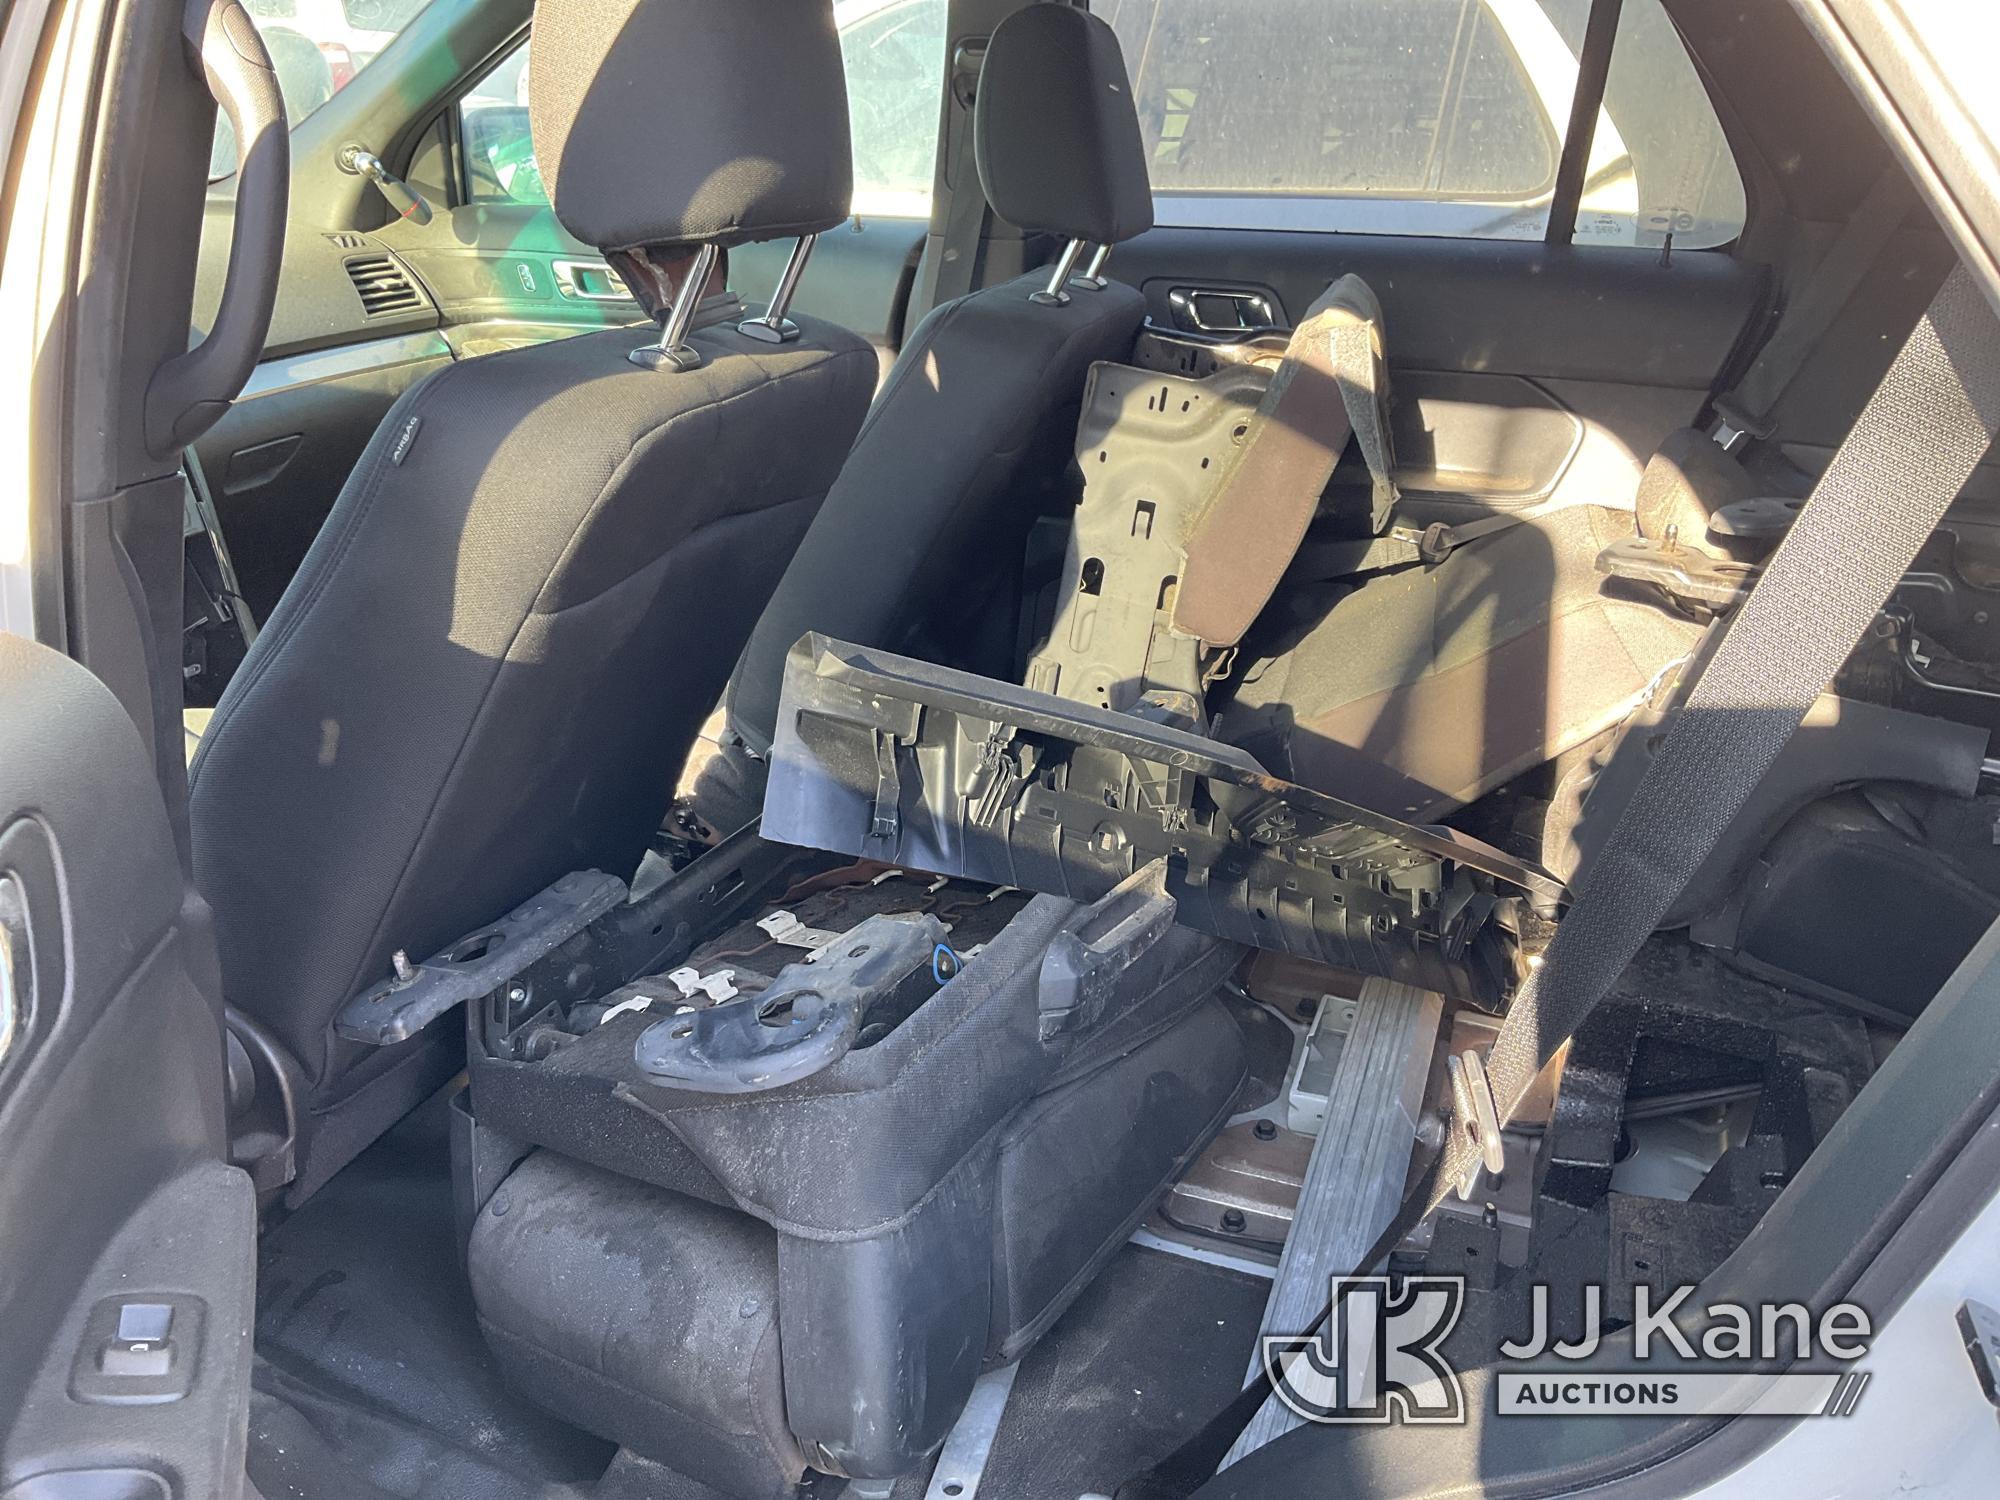 (Jurupa Valley, CA) 2017 Ford Explorer 4-Door Sport Utility Vehicle Not Running , Missing Key, Inter